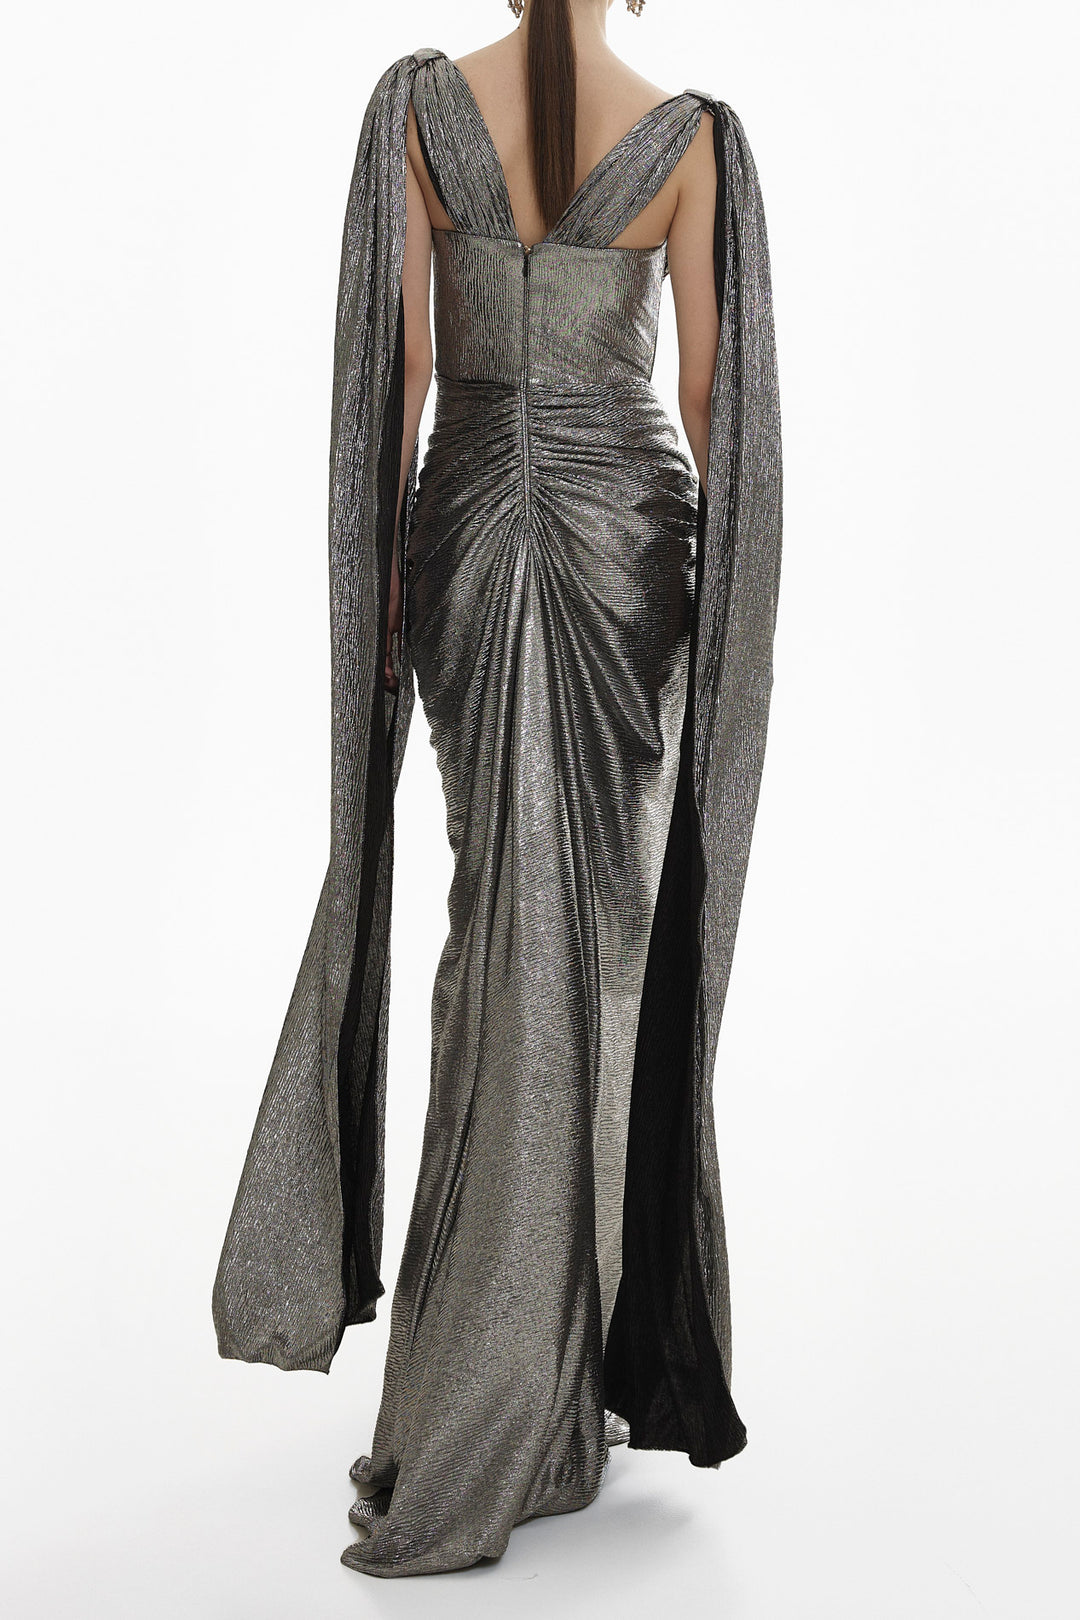 Sari Long Platinum Metallic Light Crepe Dress With Capes